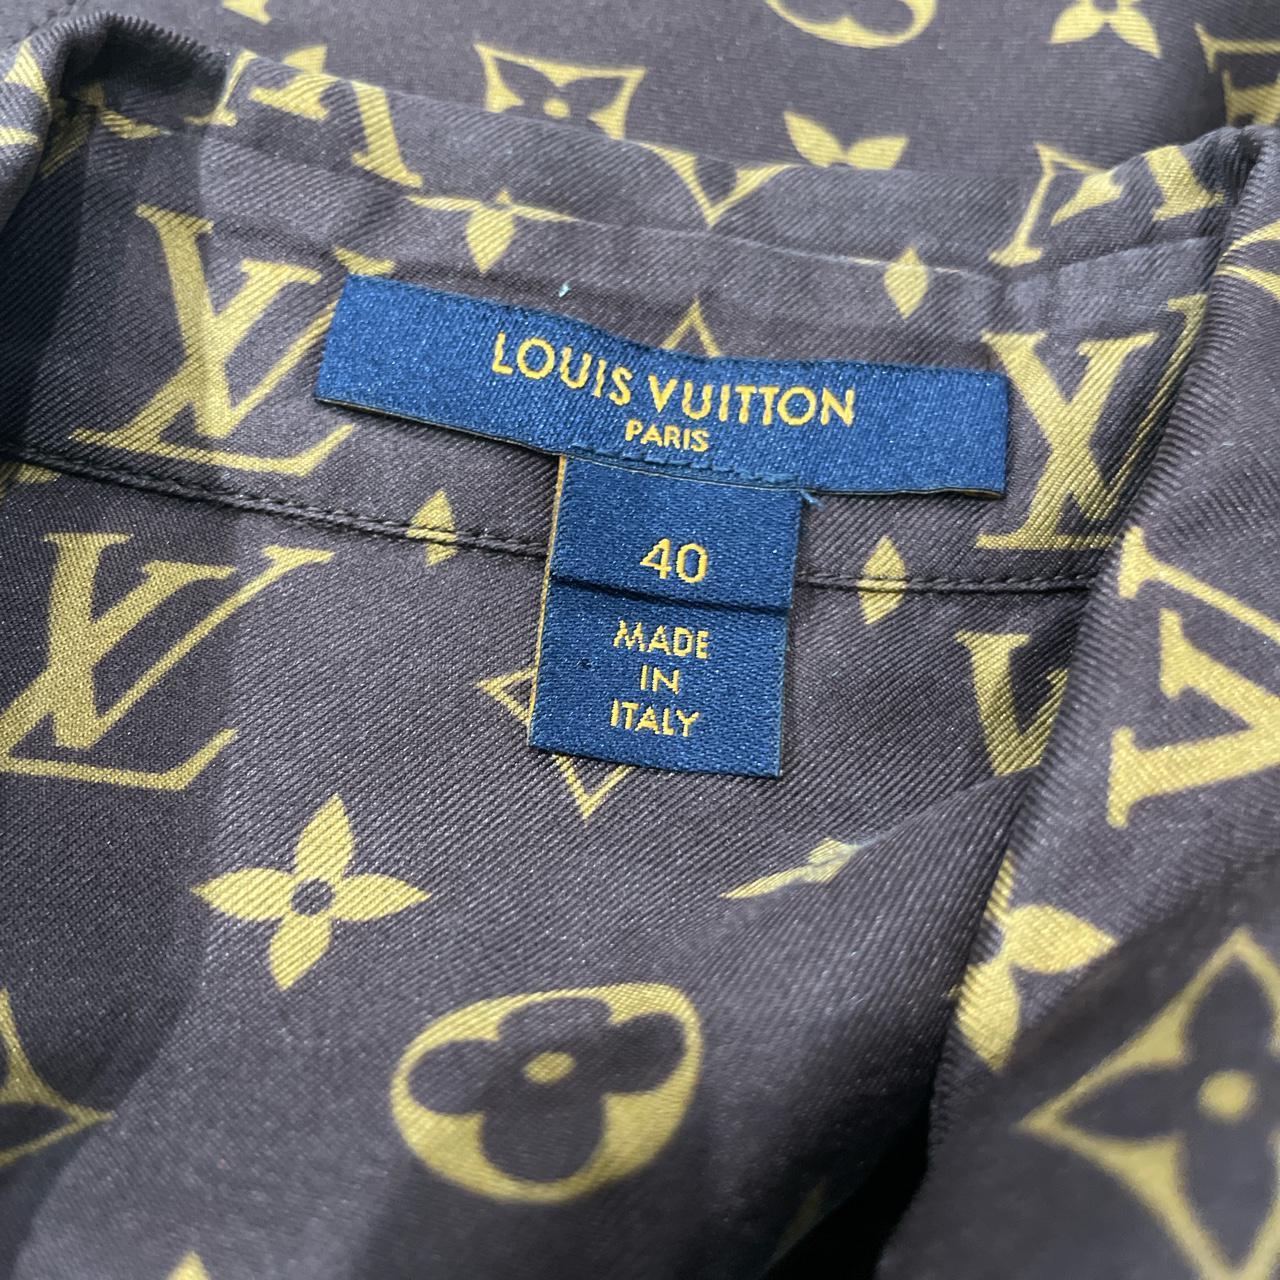 Authentic Louis Vuitton pale blue cotton button-down - Depop